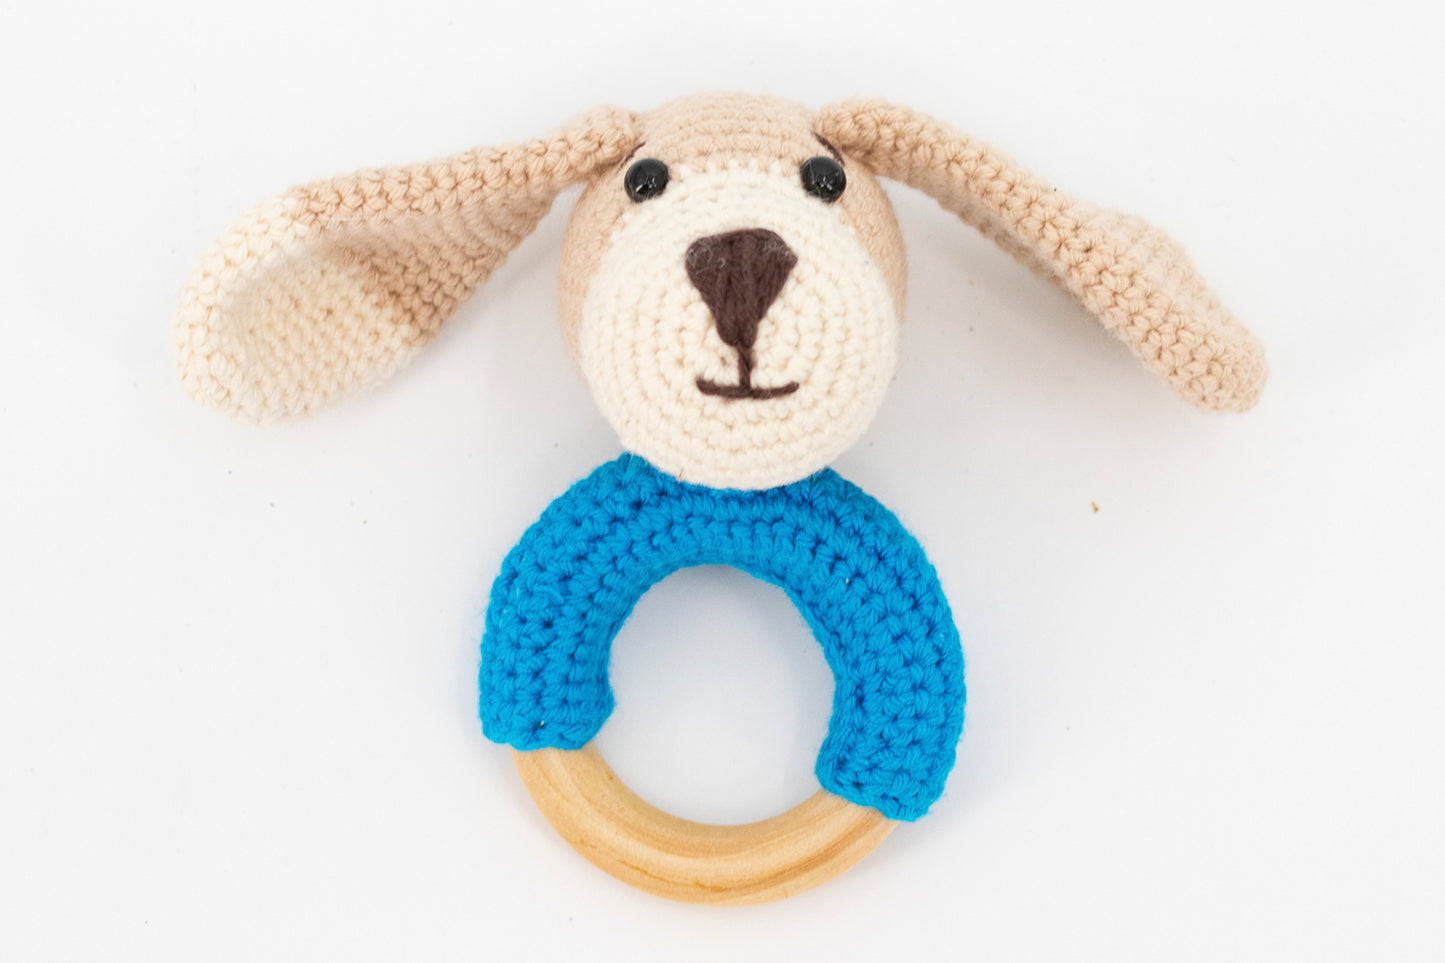 Doggie Crochet Gift Set